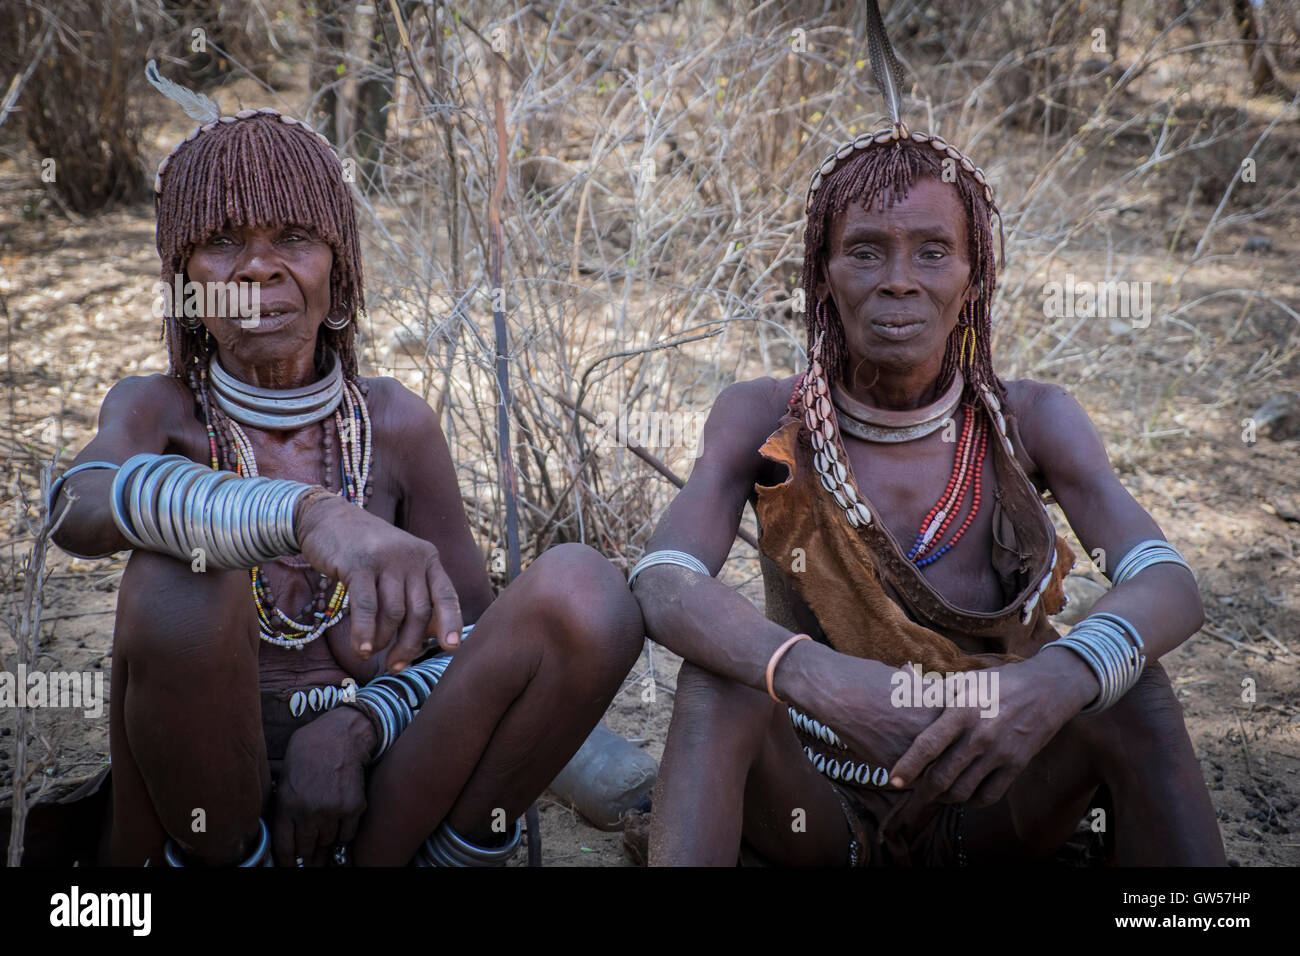 Deux femmes de la tribu Hamer de la vallée de l'Omo en Ethiopie ornés de tresses, et des ornements Banque D'Images